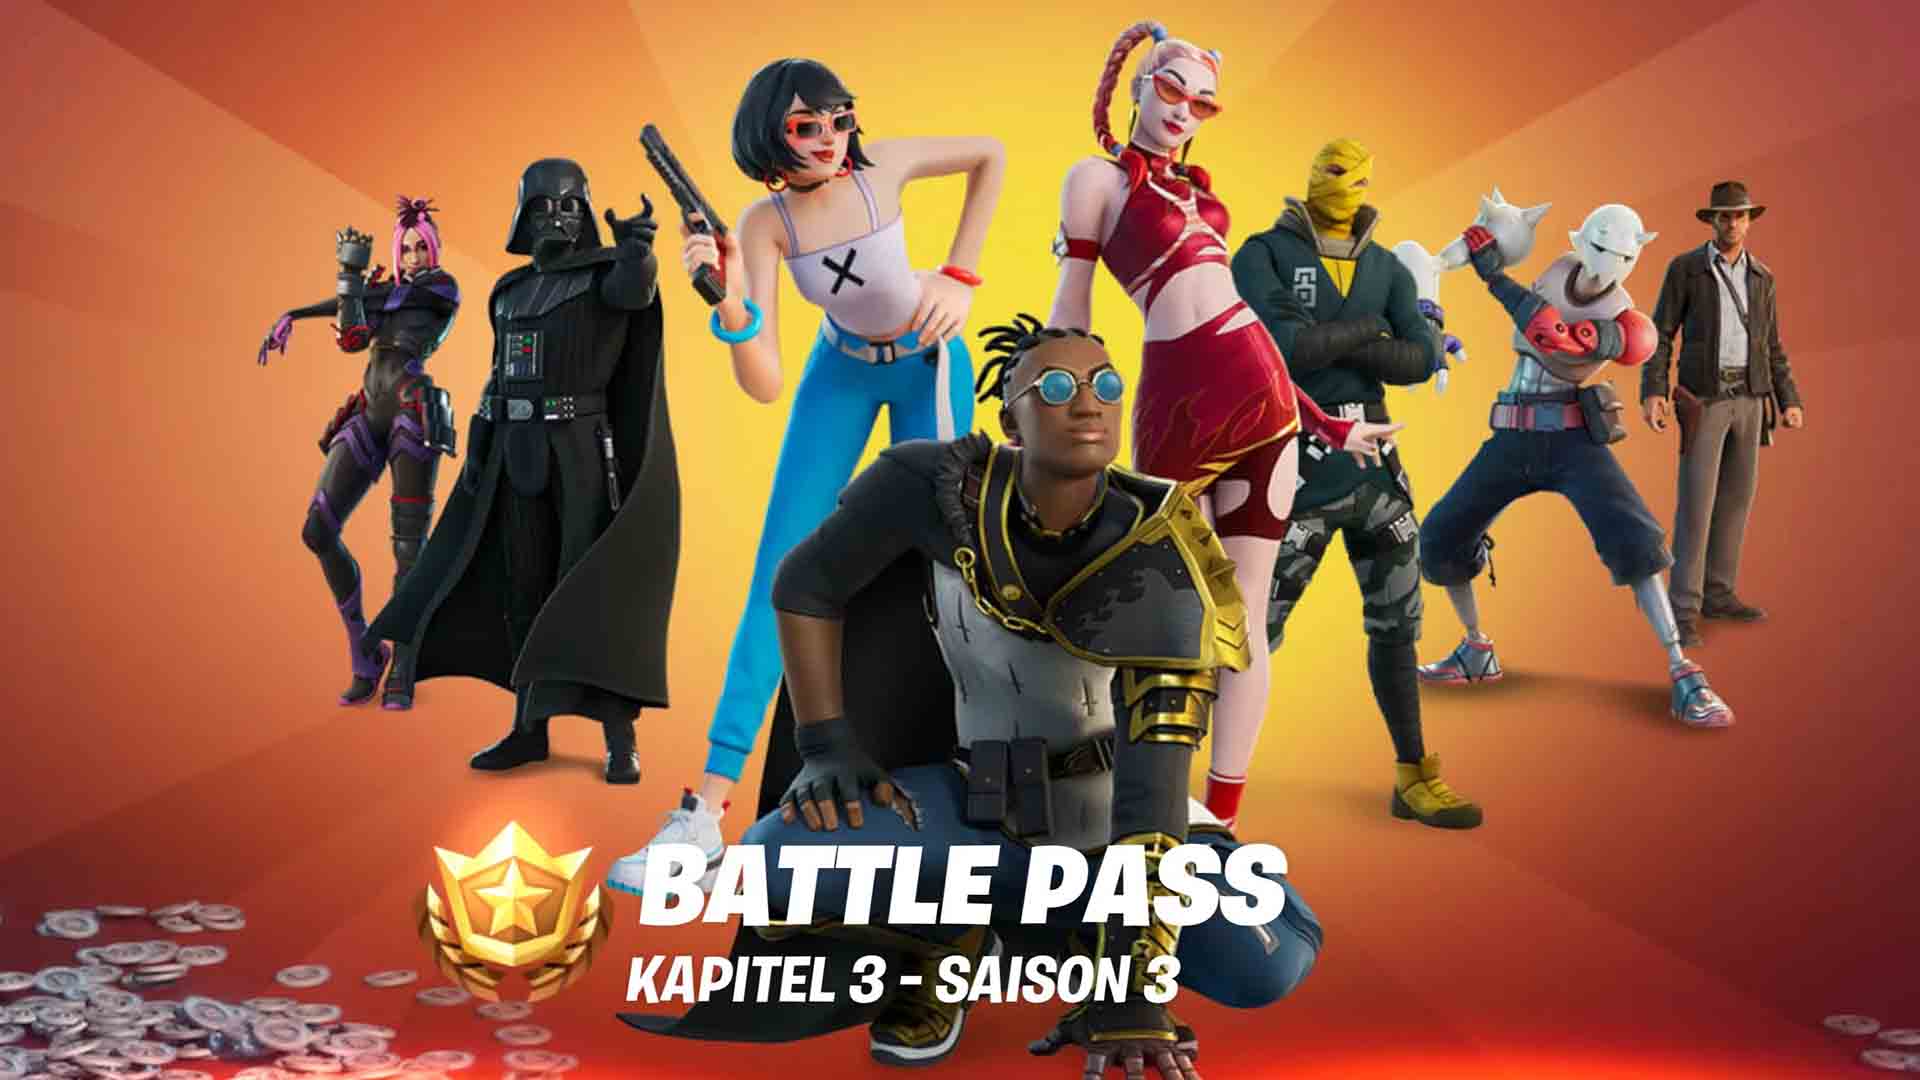 Bilder zu Fortnite Season 3 Battle Pass: Alle Skins und Inhalte im Überblick